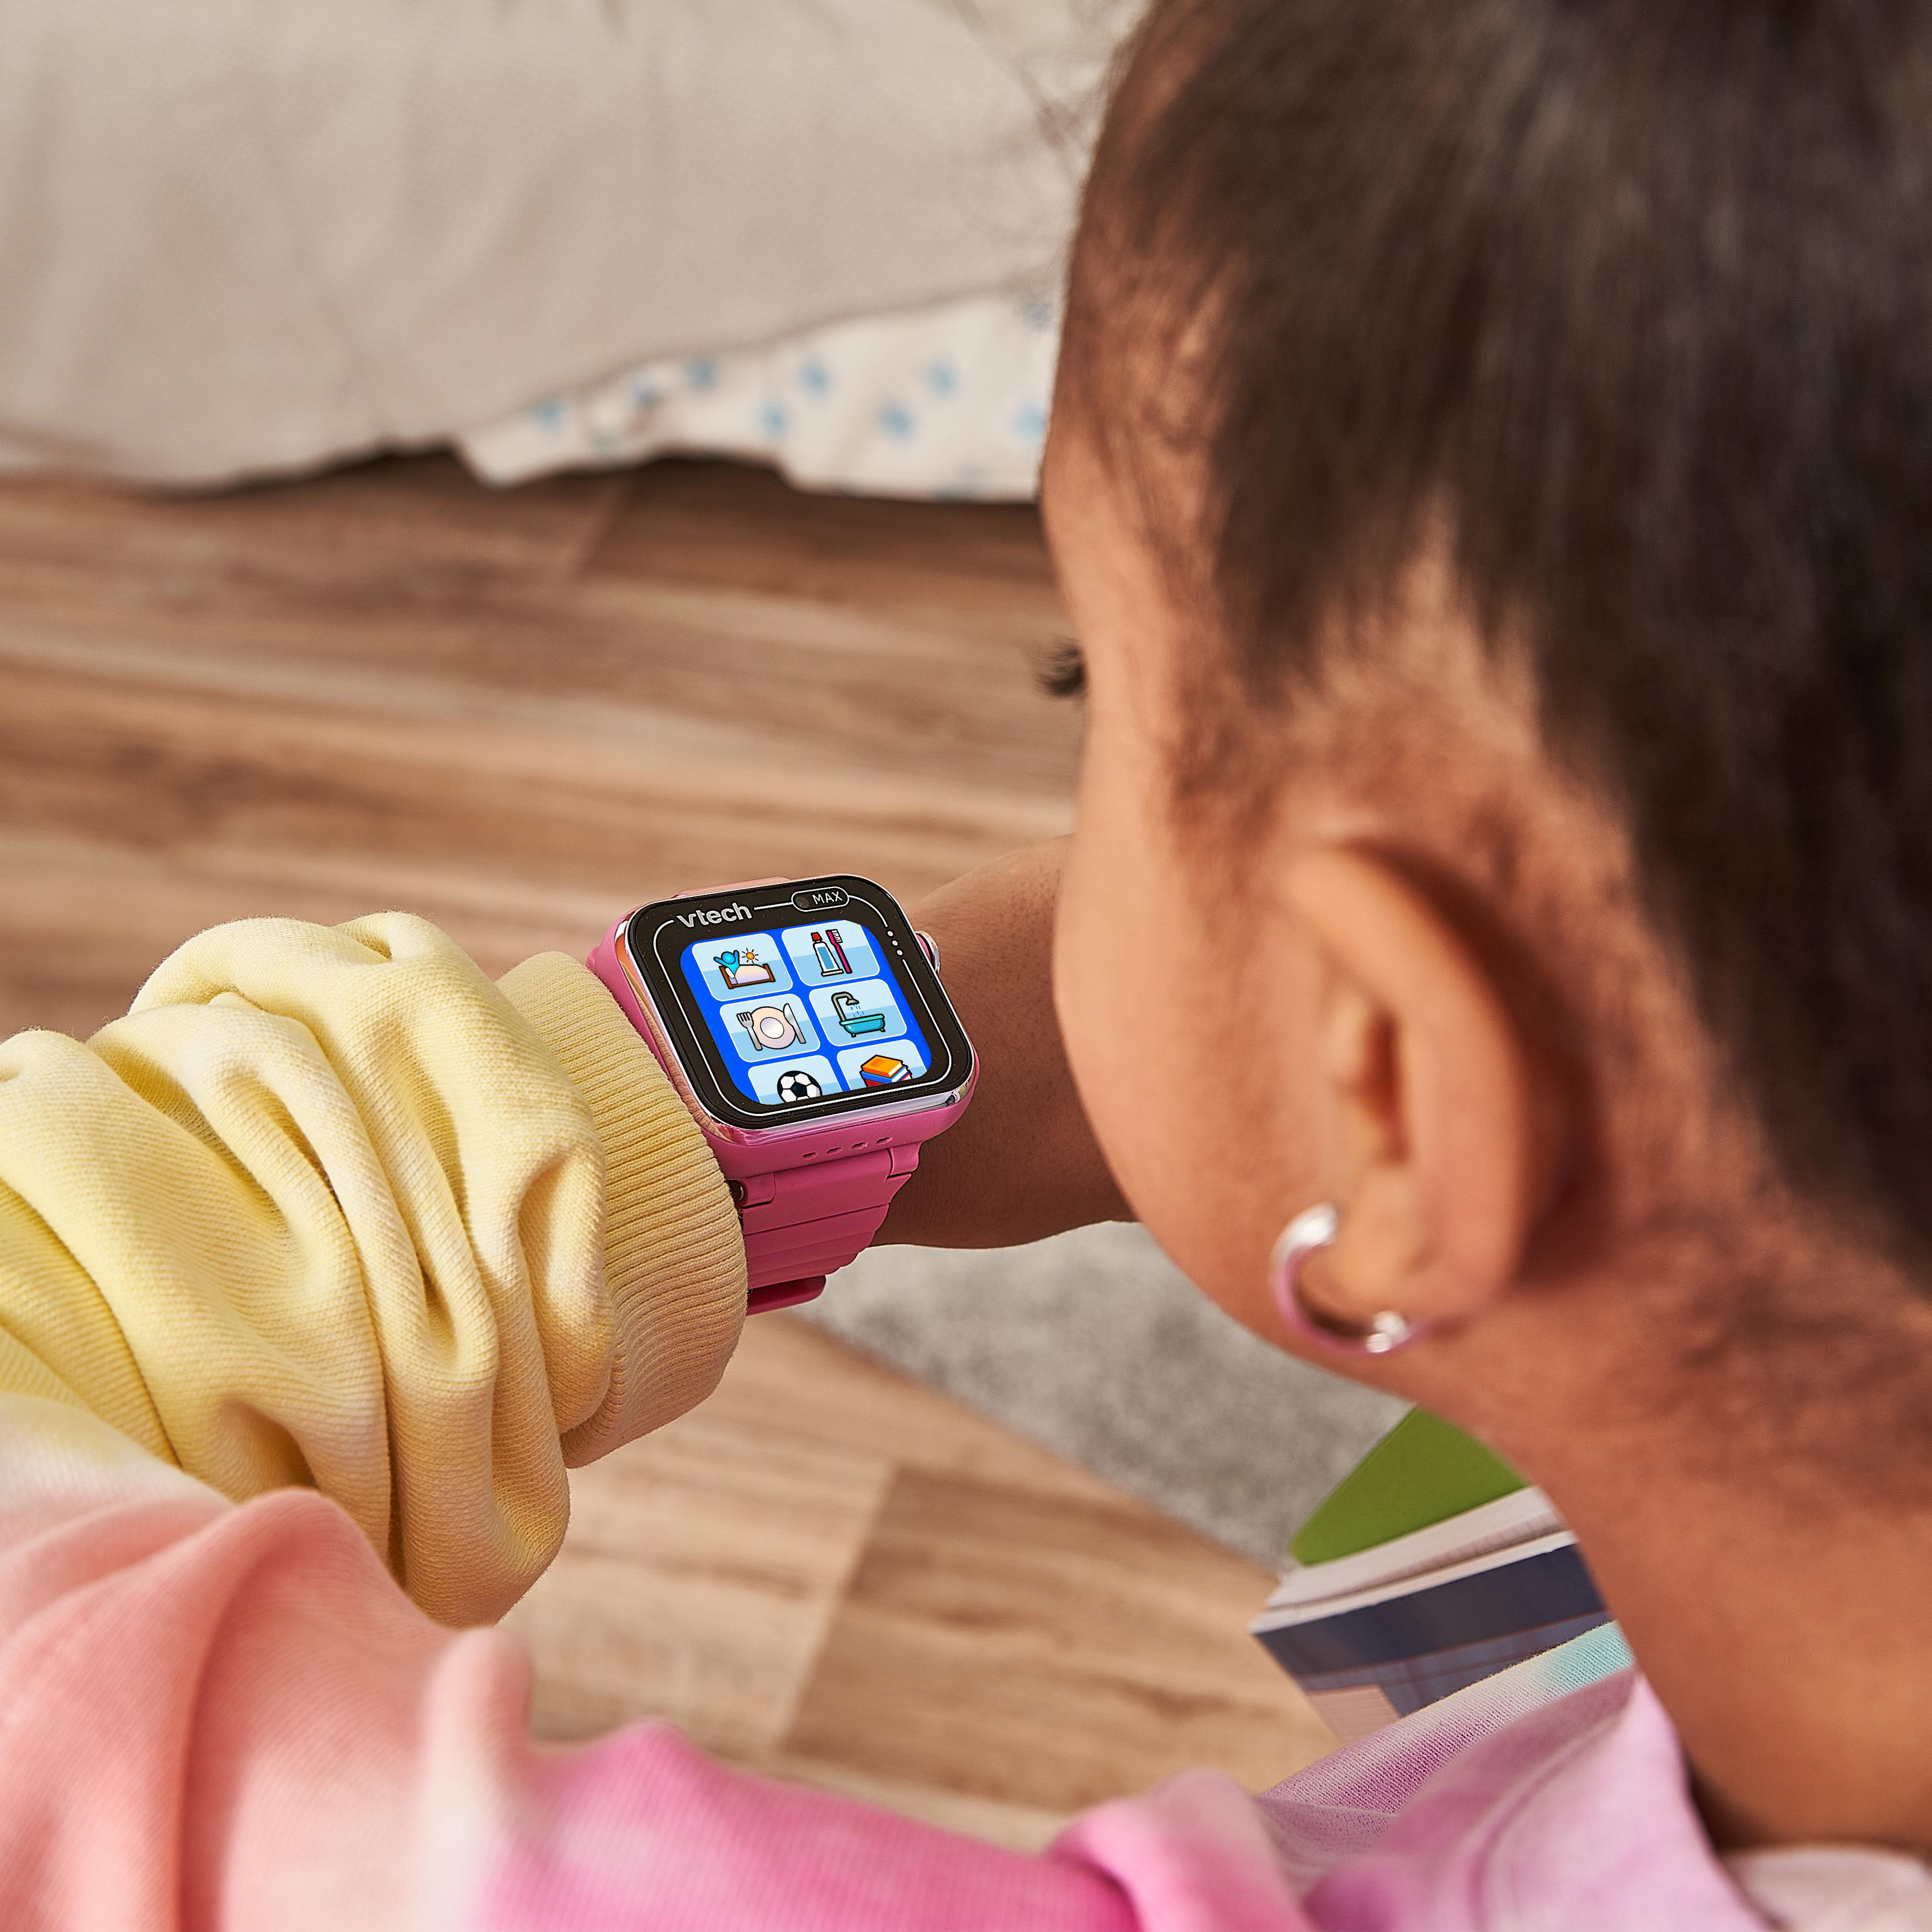 KidiZoom VTECH pink MAX Kinder-Smartwatch, Mehrfarbig